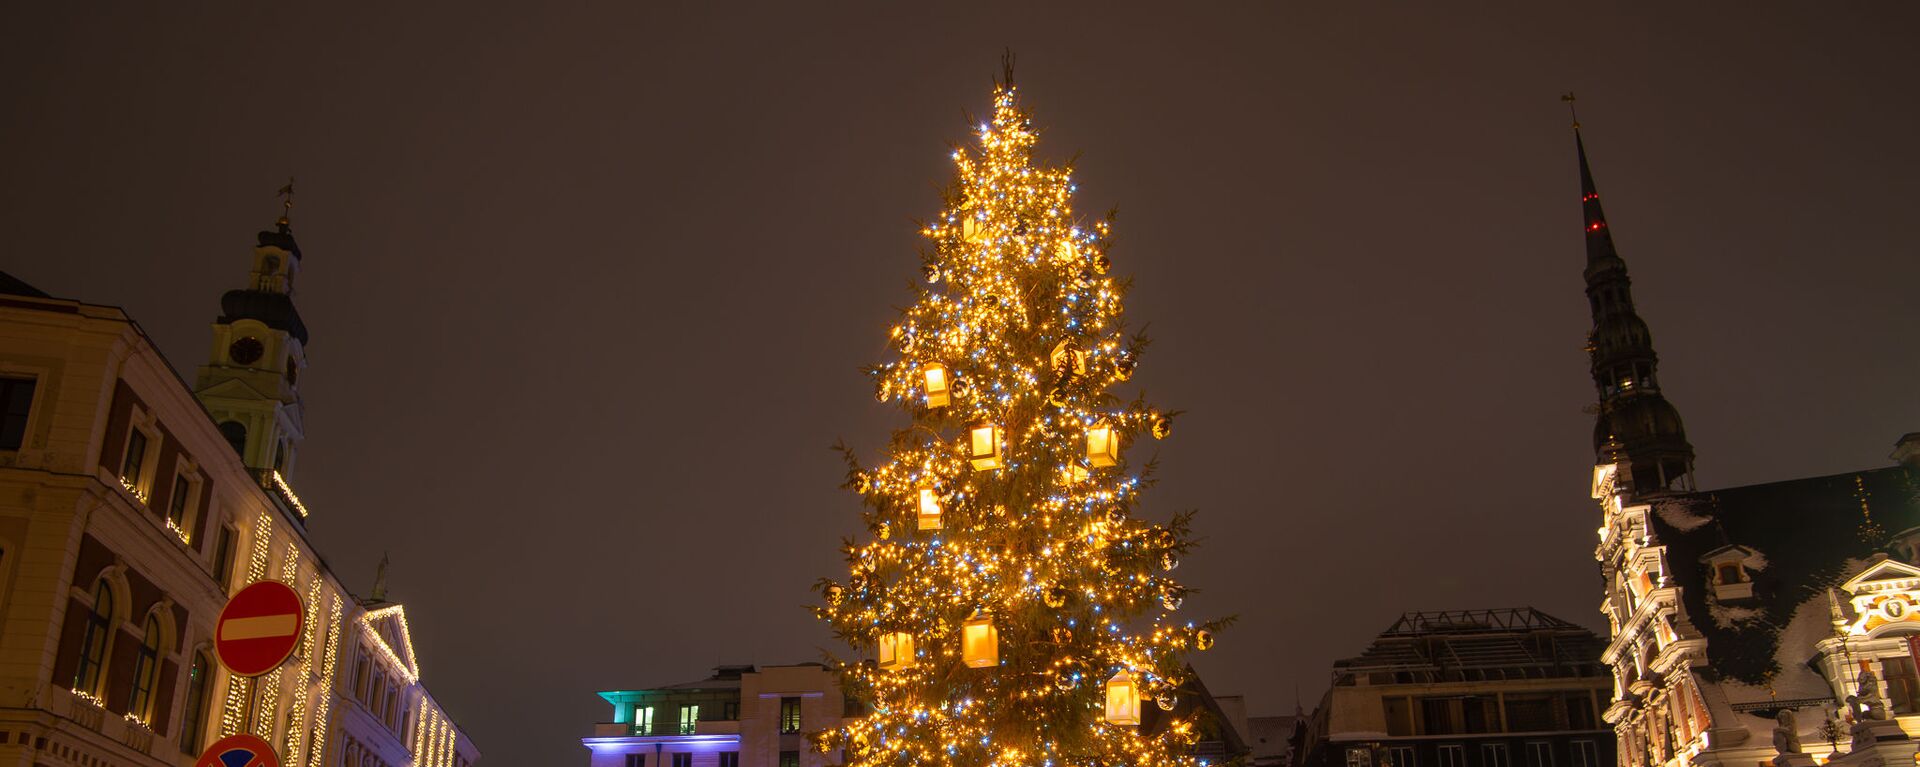 Рождественская елка на Ратушной площади в Риге - Sputnik Латвия, 1920, 09.12.2021